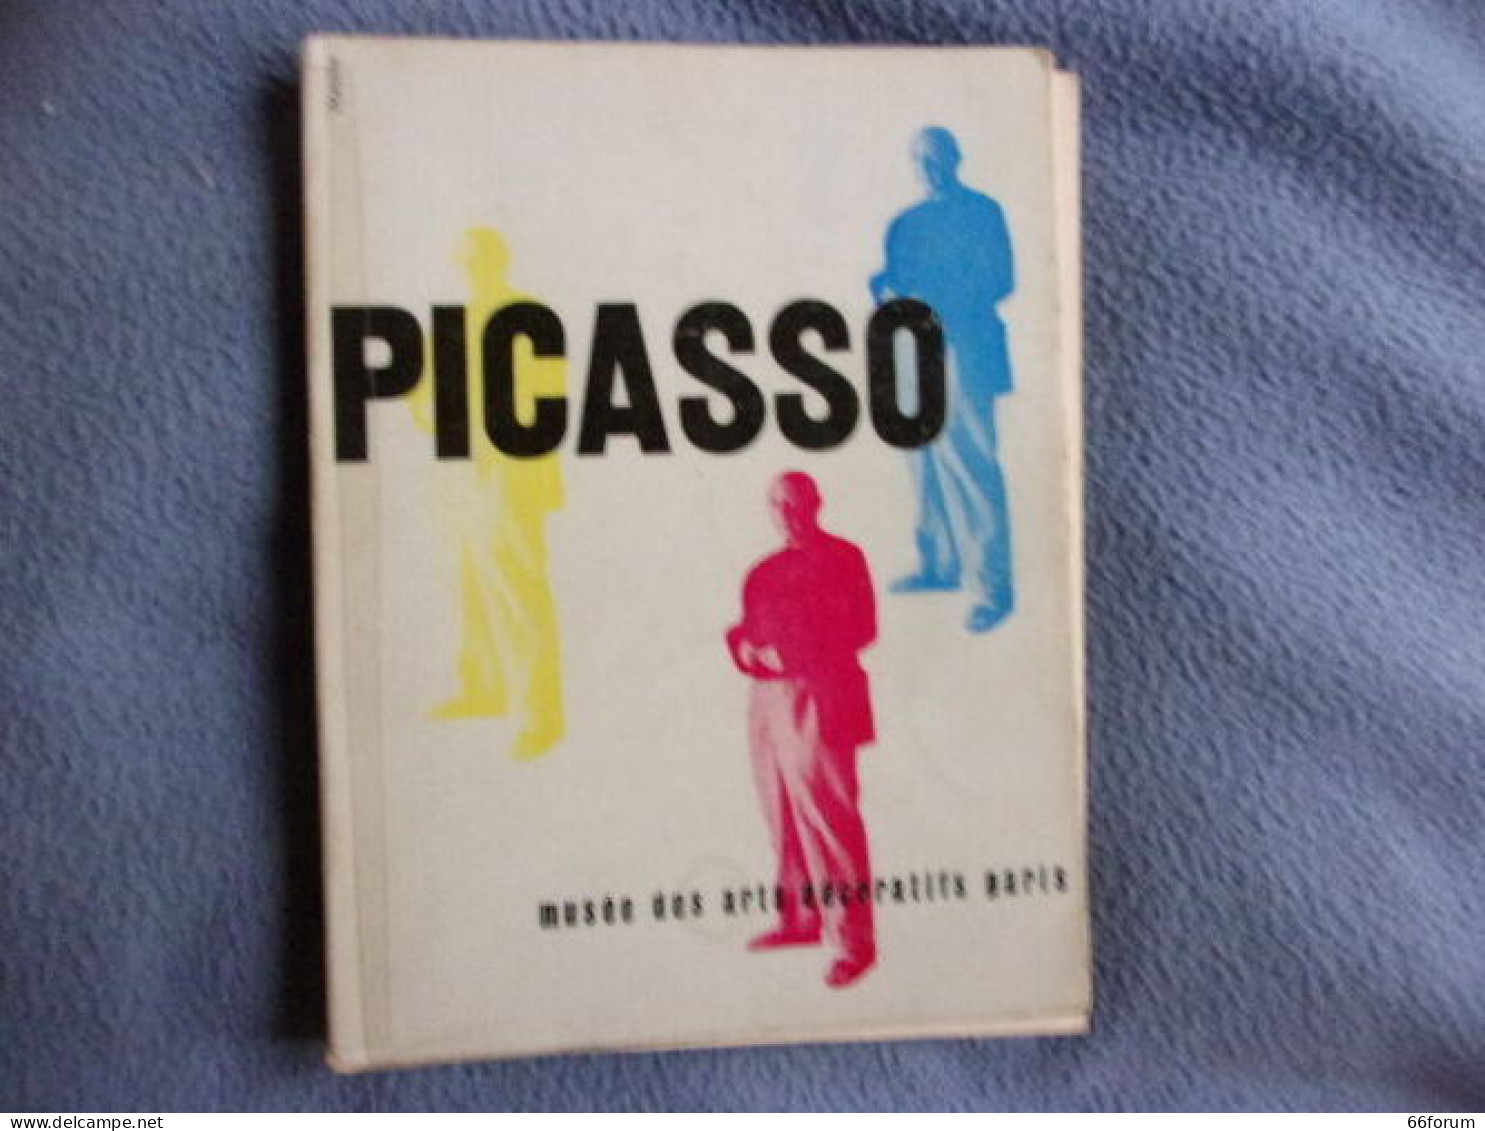 Picasso Peintures 1900-1955 Au Musée Des Arts Décoratifs - Arte